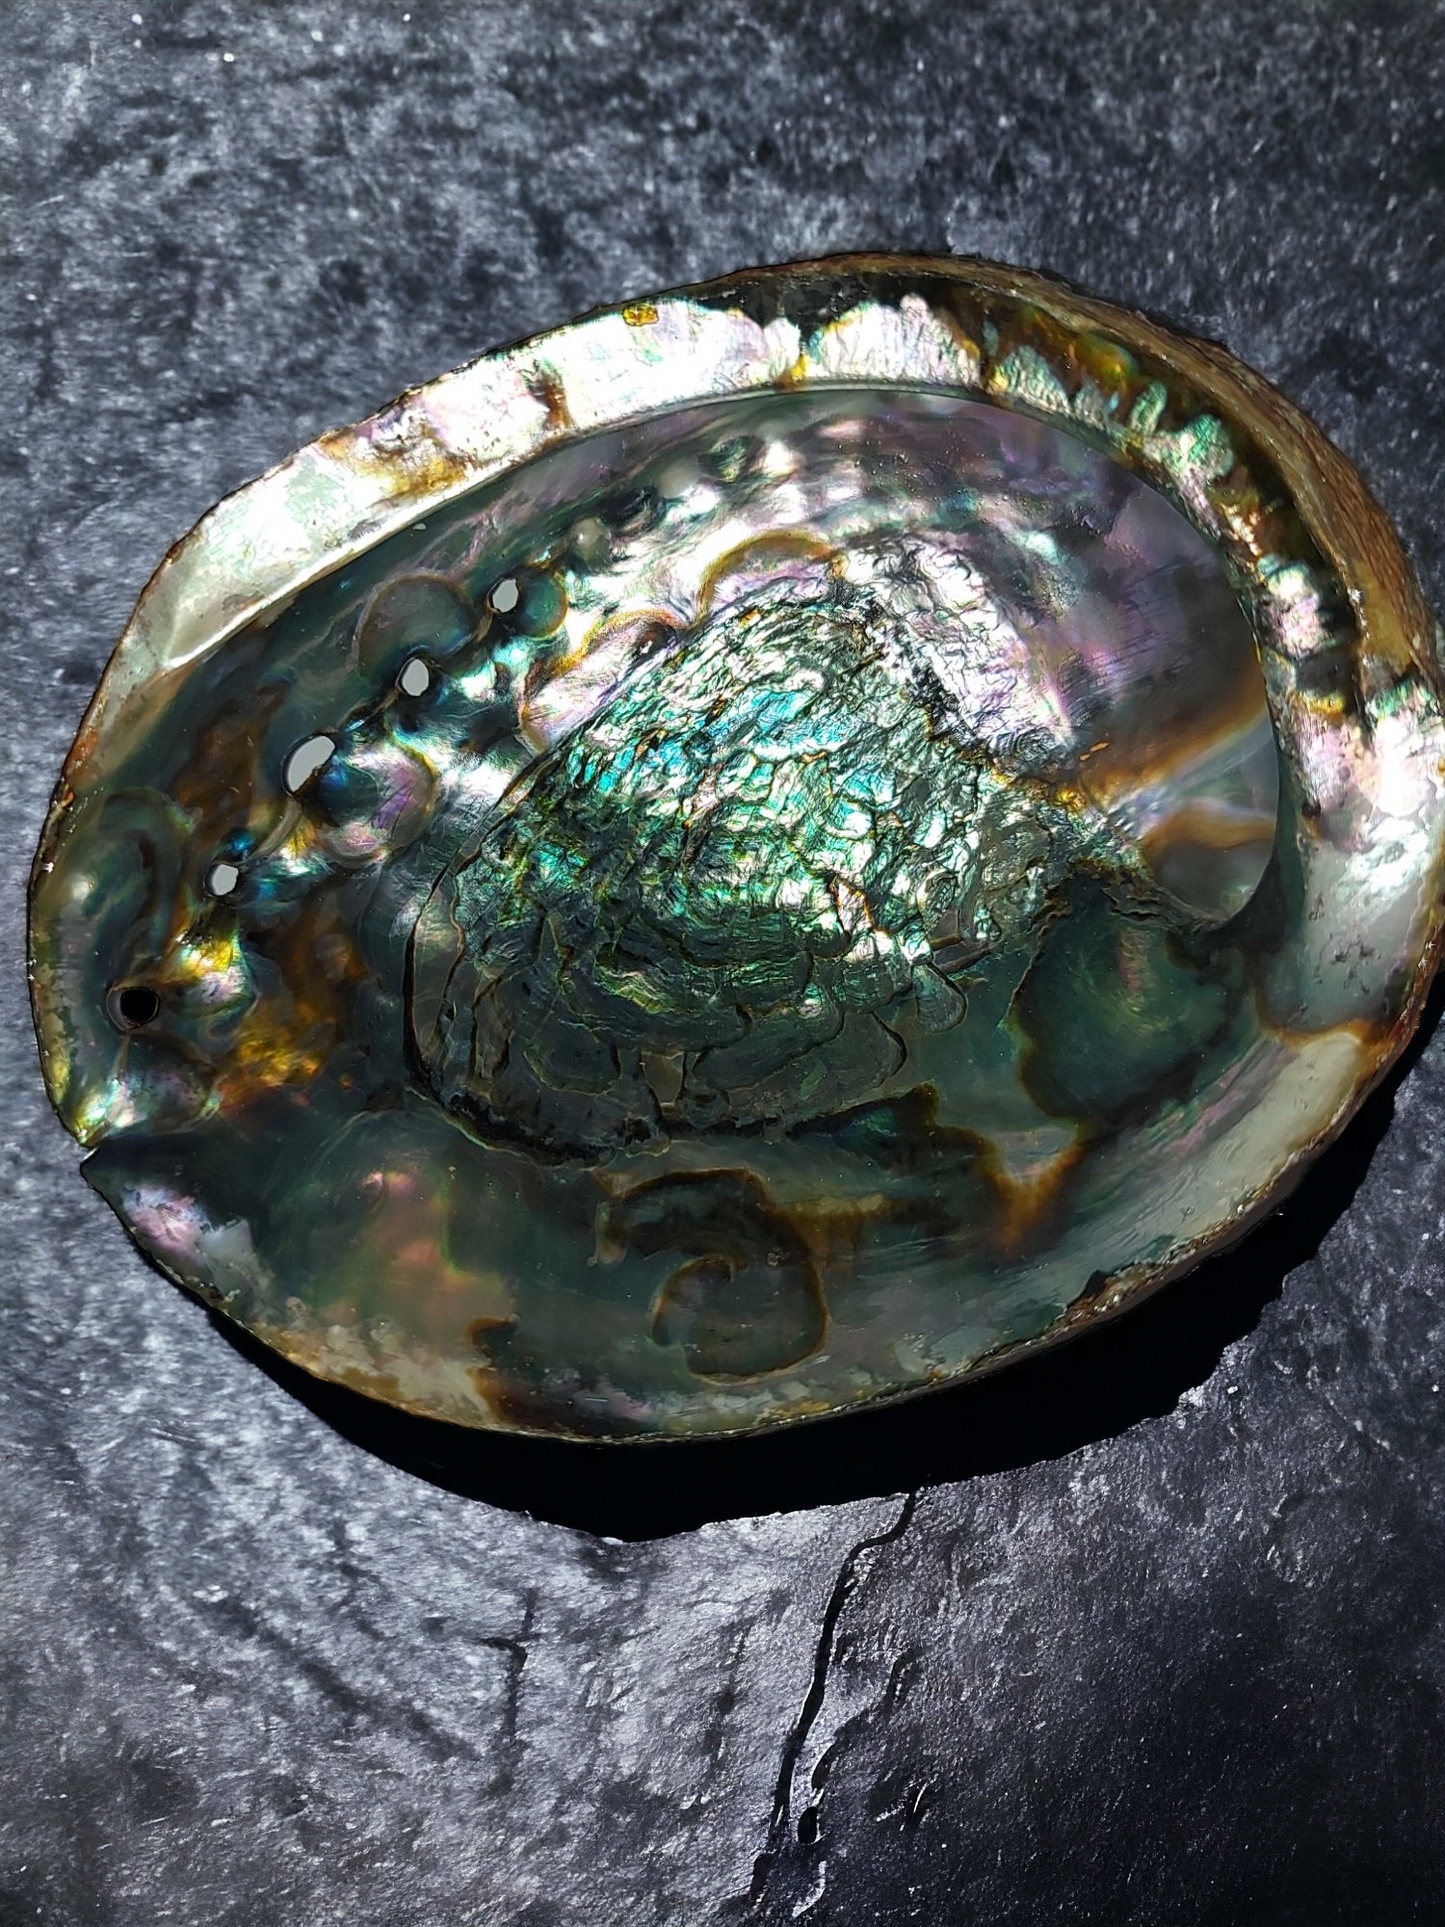 Abalone Shells